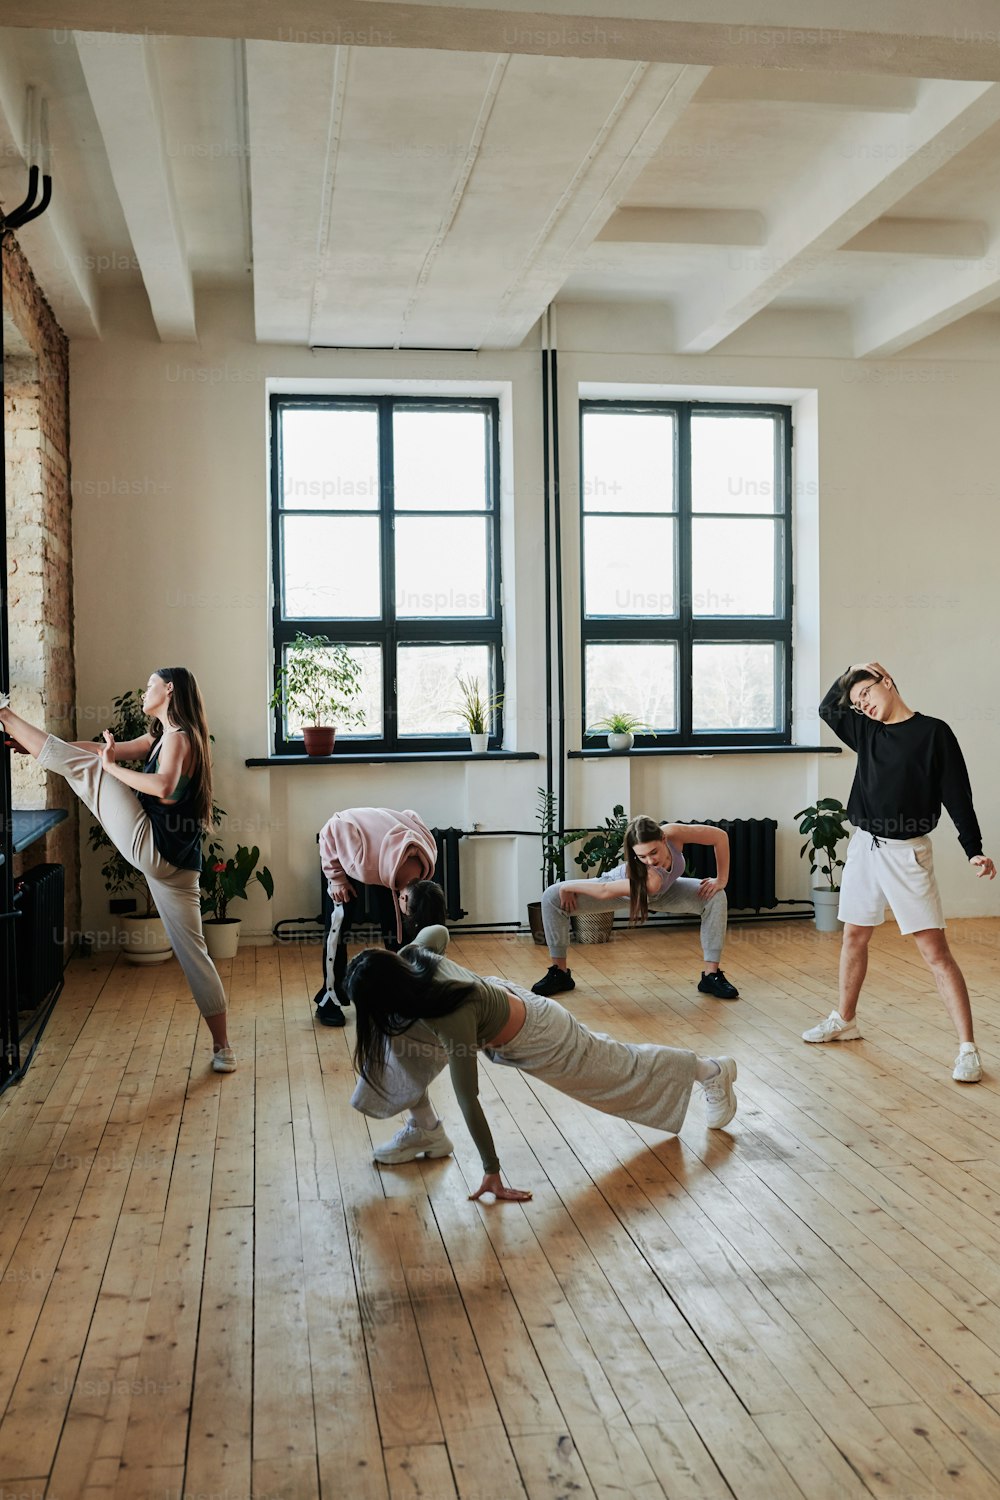 Gruppo di adolescenti in abbigliamento sportivo che fanno esercizi di riscaldamento sul pavimento di legno della sala da ballo o studio di danza moderna